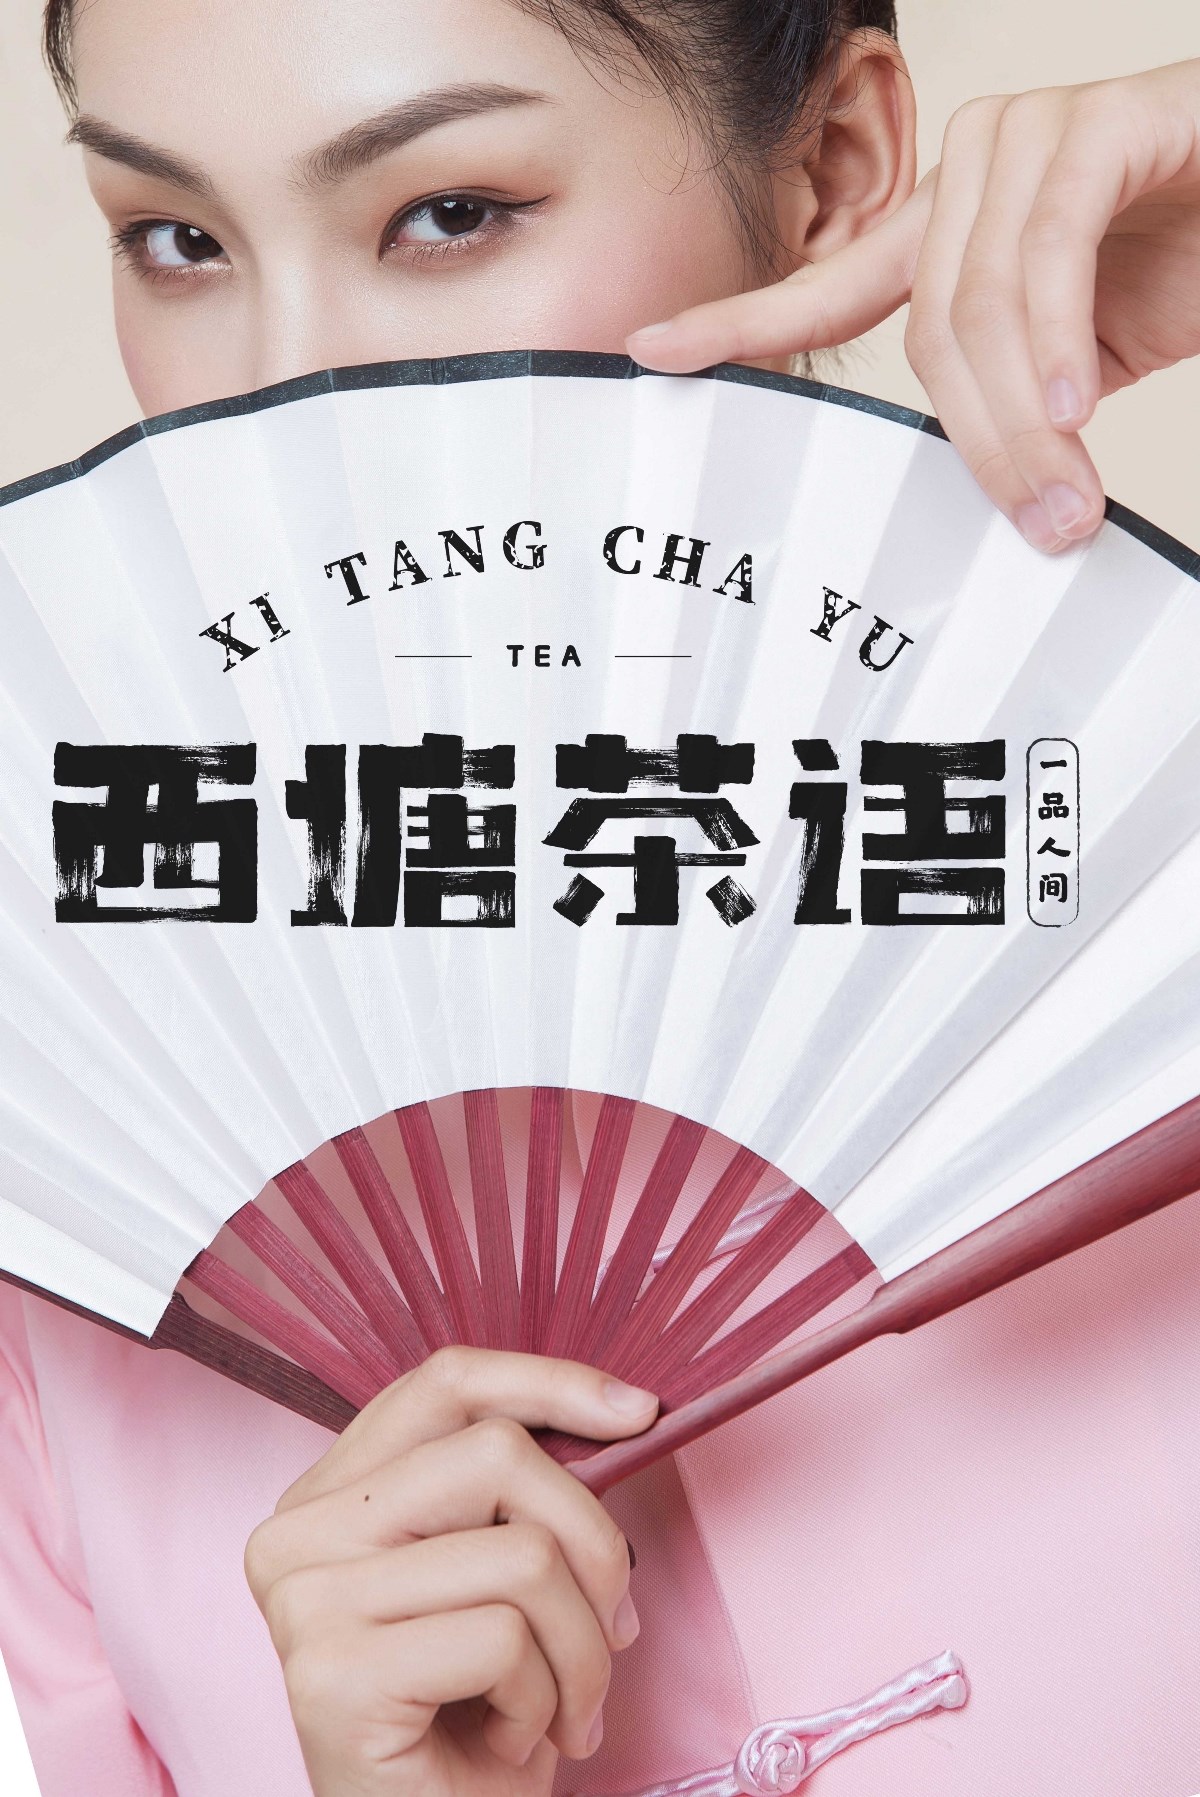 西塘茶语 字体设计